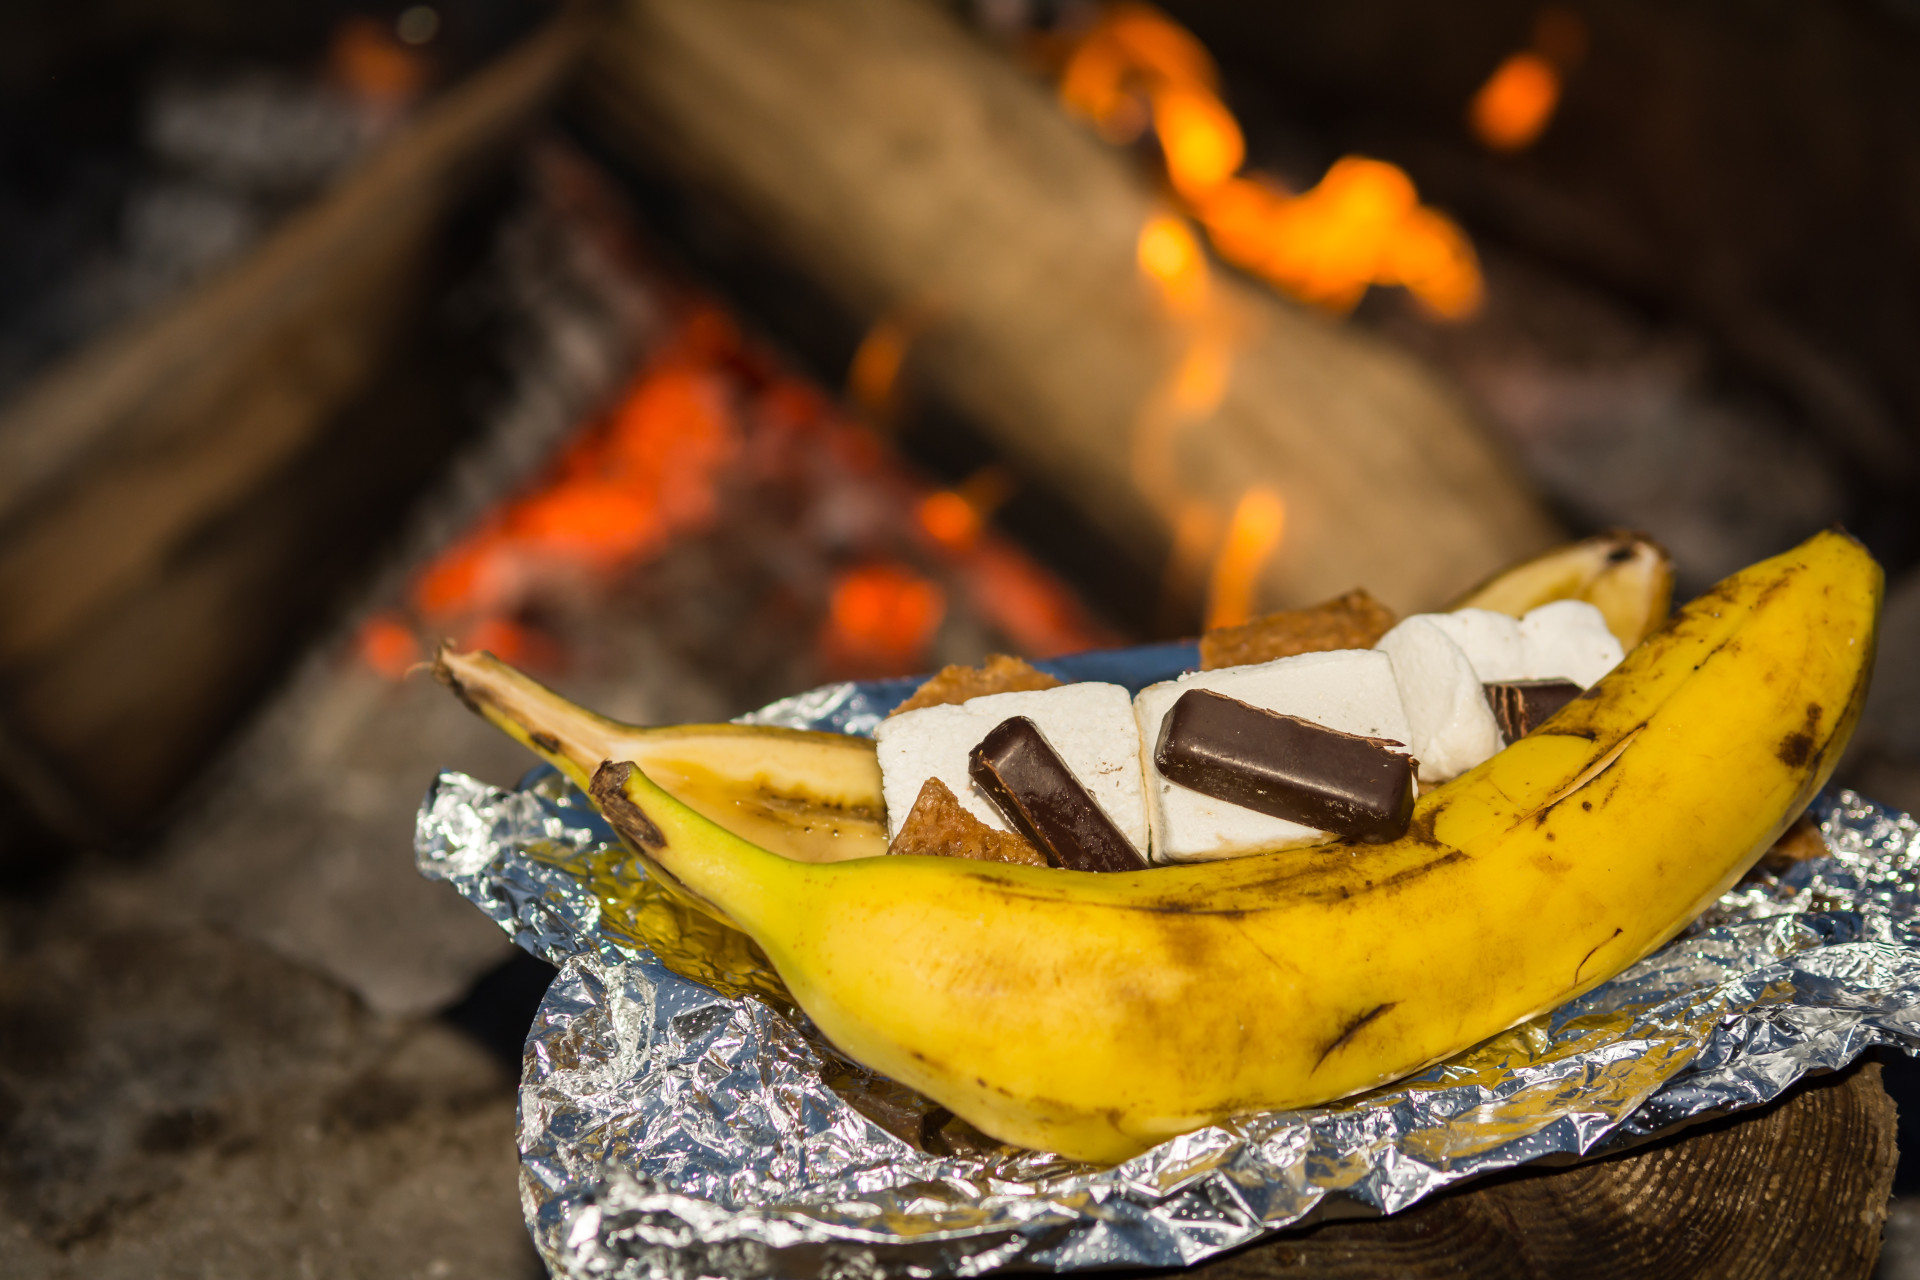 Coupez une banane en tranches sur un côté et ajoutez-y des pépites de chocolat, des mini-marshmallows et des biscuits écrasés, puis enveloppez le tout dans une feuille d'aluminium et placez-la sur le feu. En quelques minutes, vous obtiendrez un dessert délicieux, gluant et gourmand.